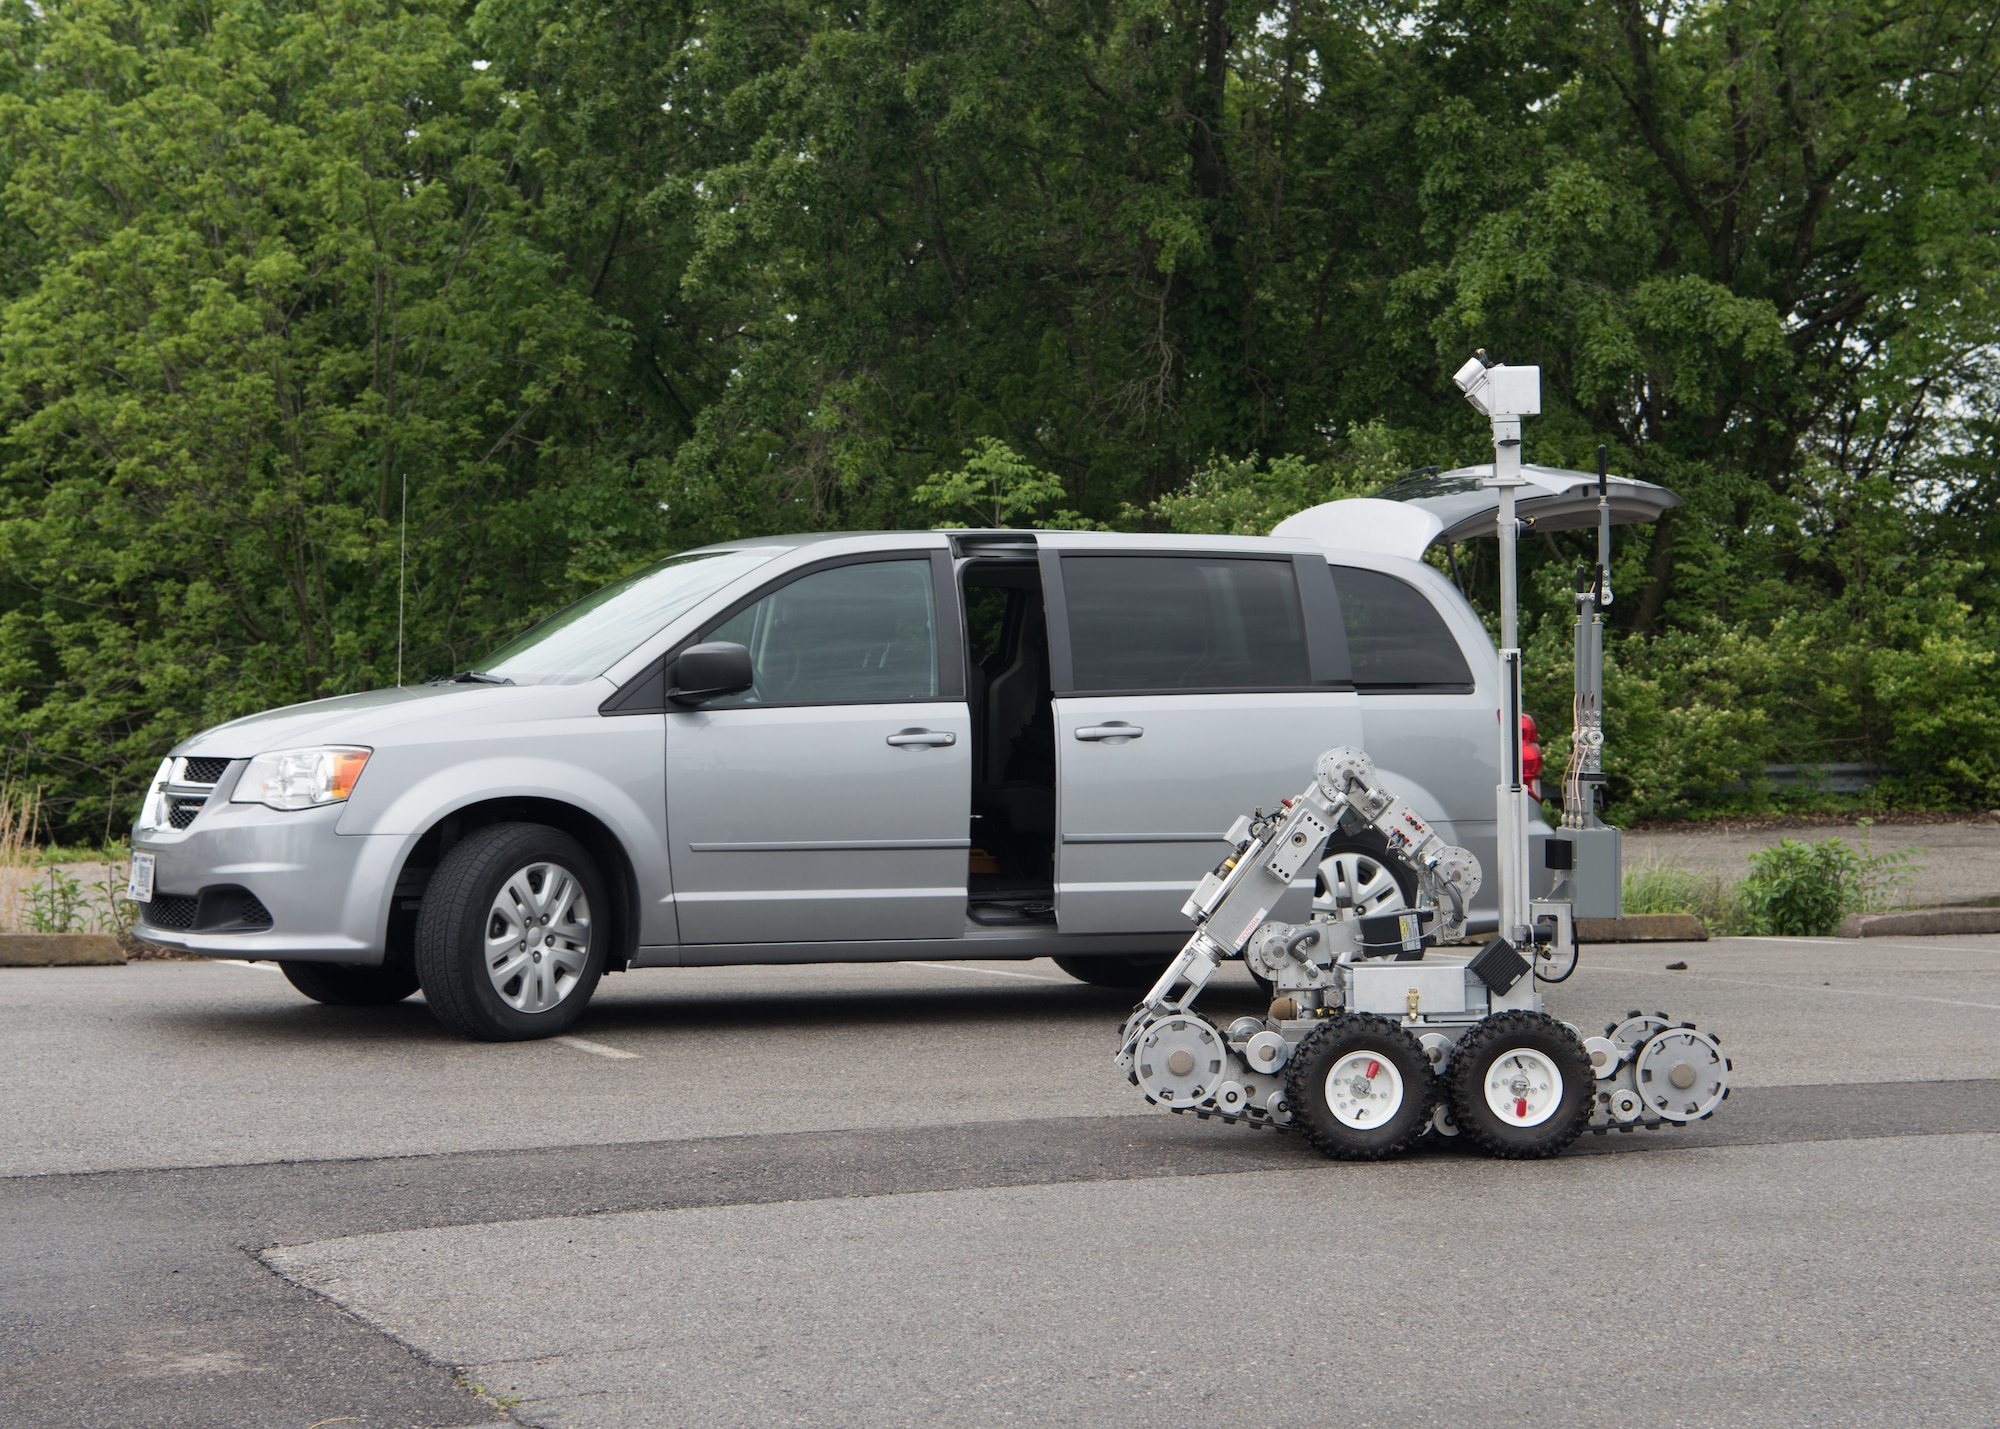 An explosive ordnance disposal robot drives past a minvan.